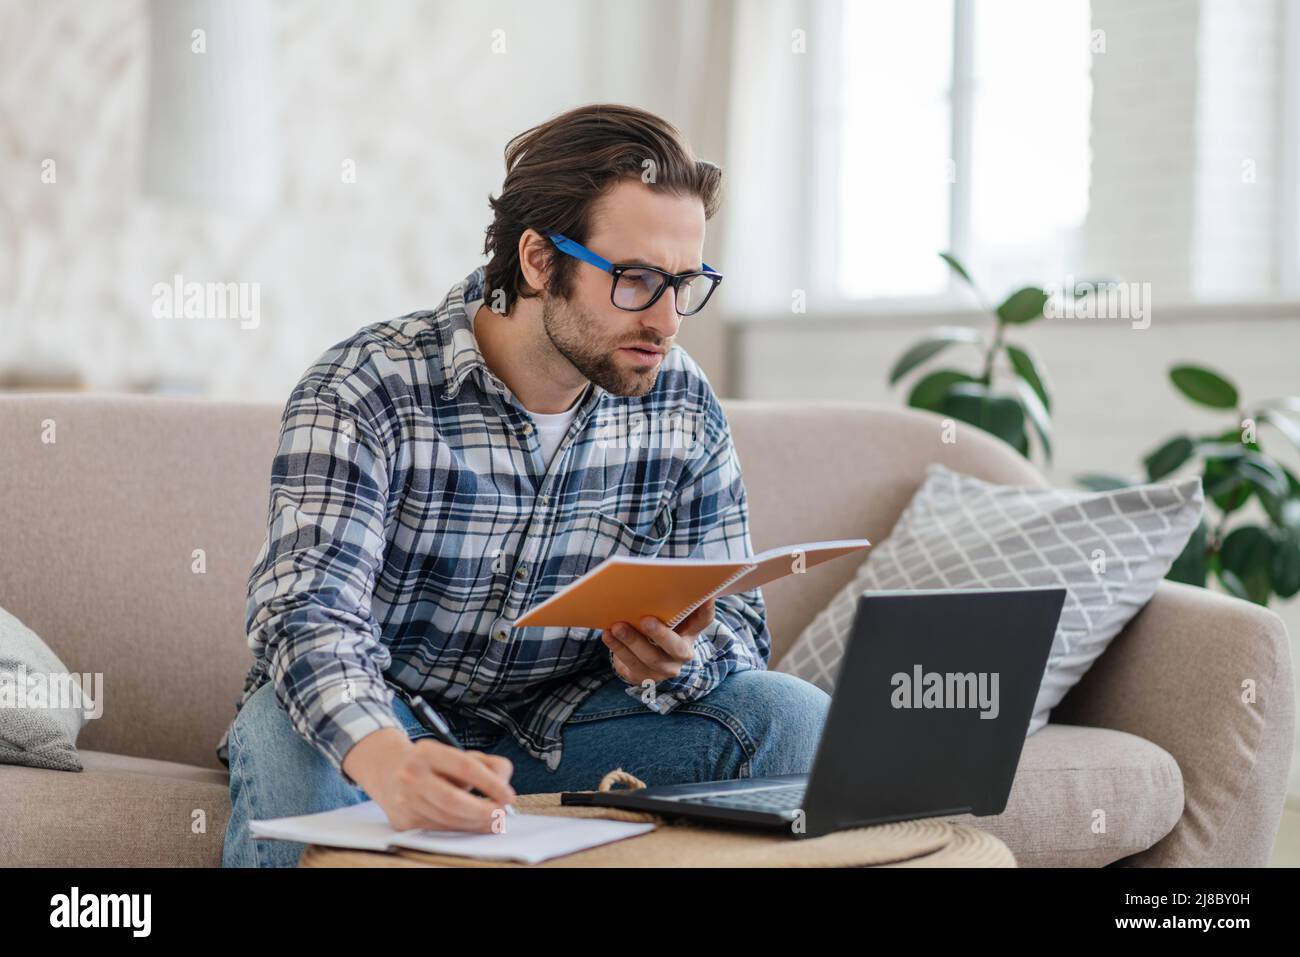 Homme caucasien millénaire occupé avec un chaume dans des lunettes est assis sur un canapé avec ordinateur portable et livre, recherche, prend des notes Banque D'Images